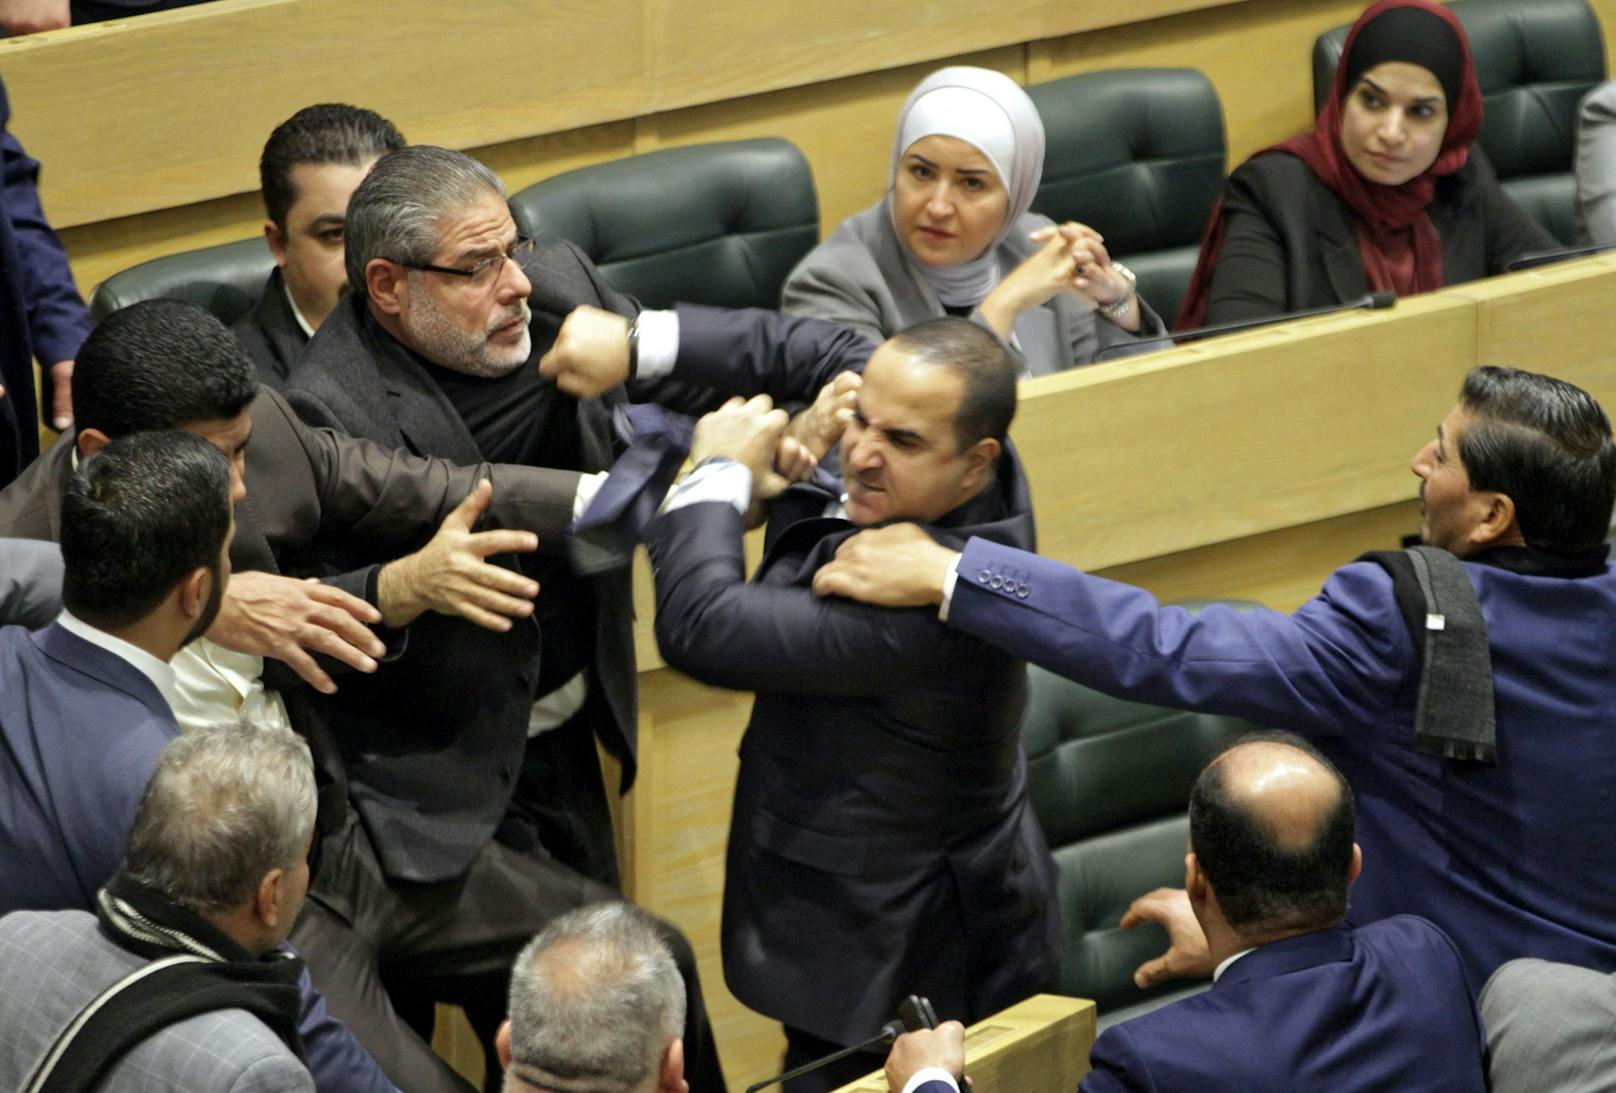 Jordanische Parlamentarier werden während einer Schlägerei im Parlament getrennt.